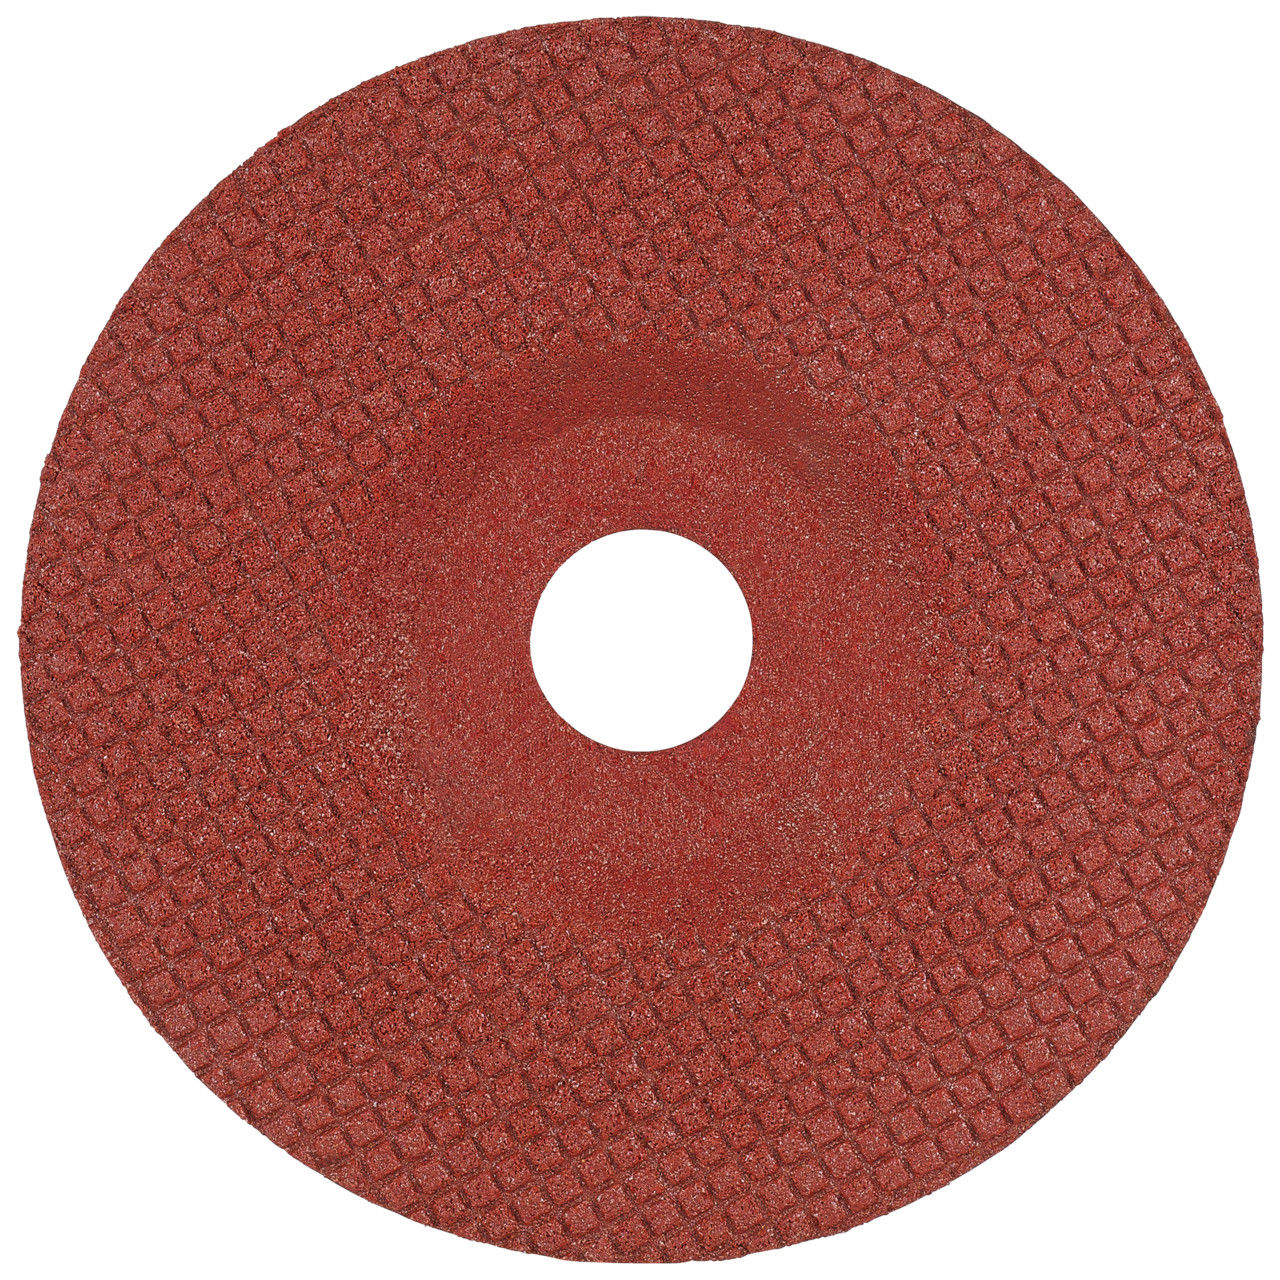 TYROLIT Disque abrasif DxH 115x22,23 TOUCH pour acier inoxydable et métaux non ferreux, forme : 29T - version déportée, Art. 236318